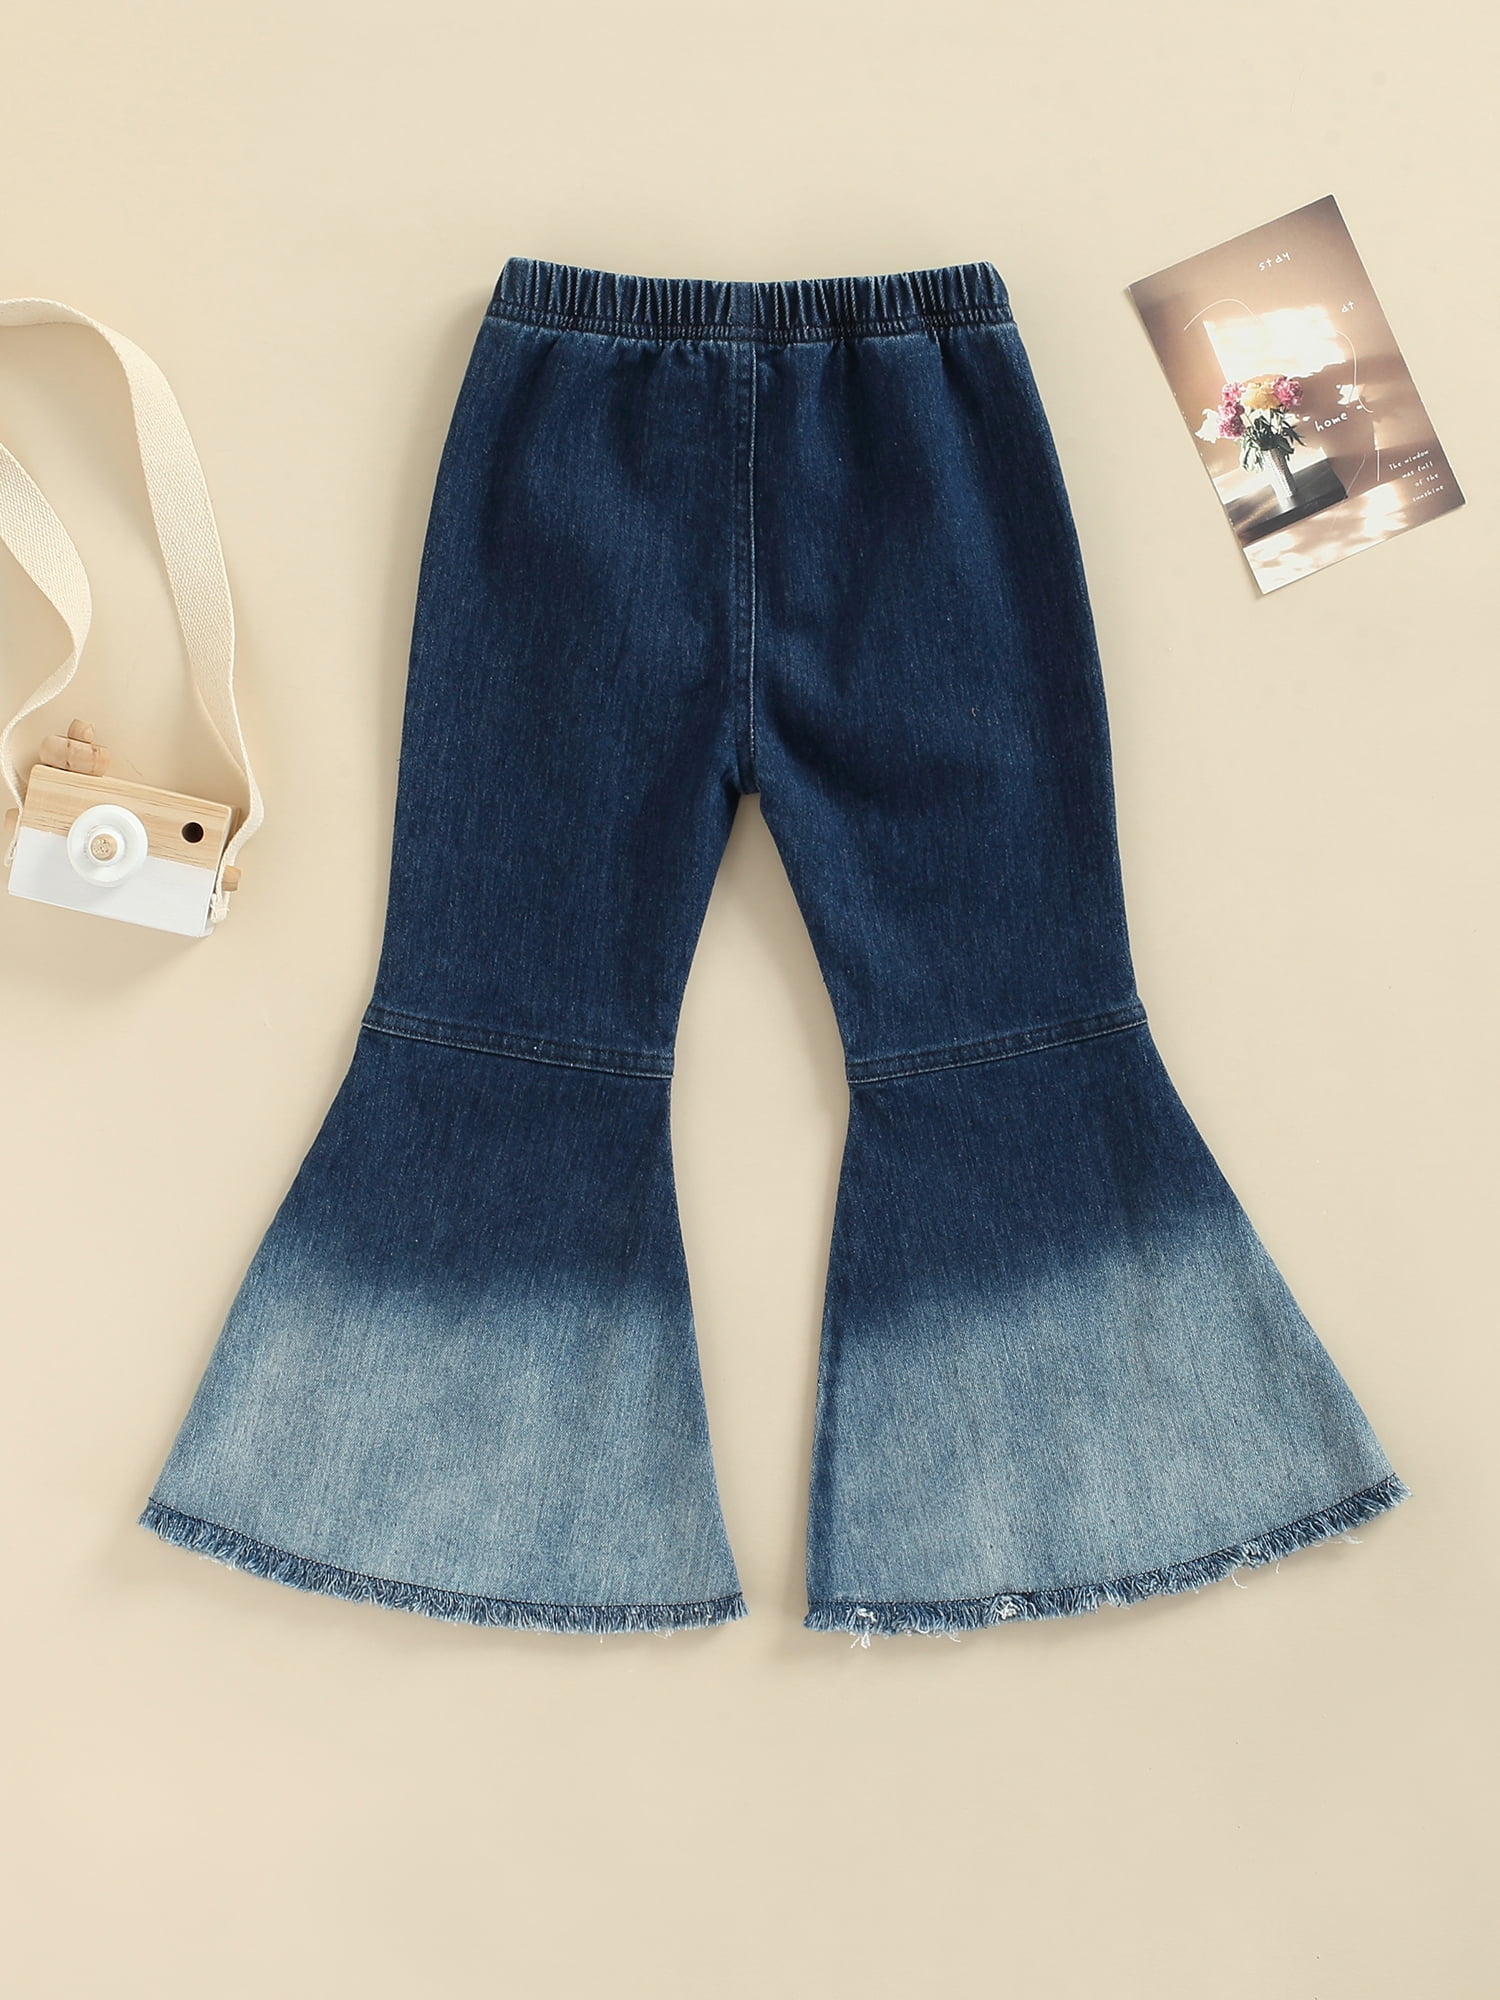 Specialcal Toddler Little Kid Girls Denim Jeans Bell Bottom Flare Pants Leggings Trousers 5-6Y, Light Blue 